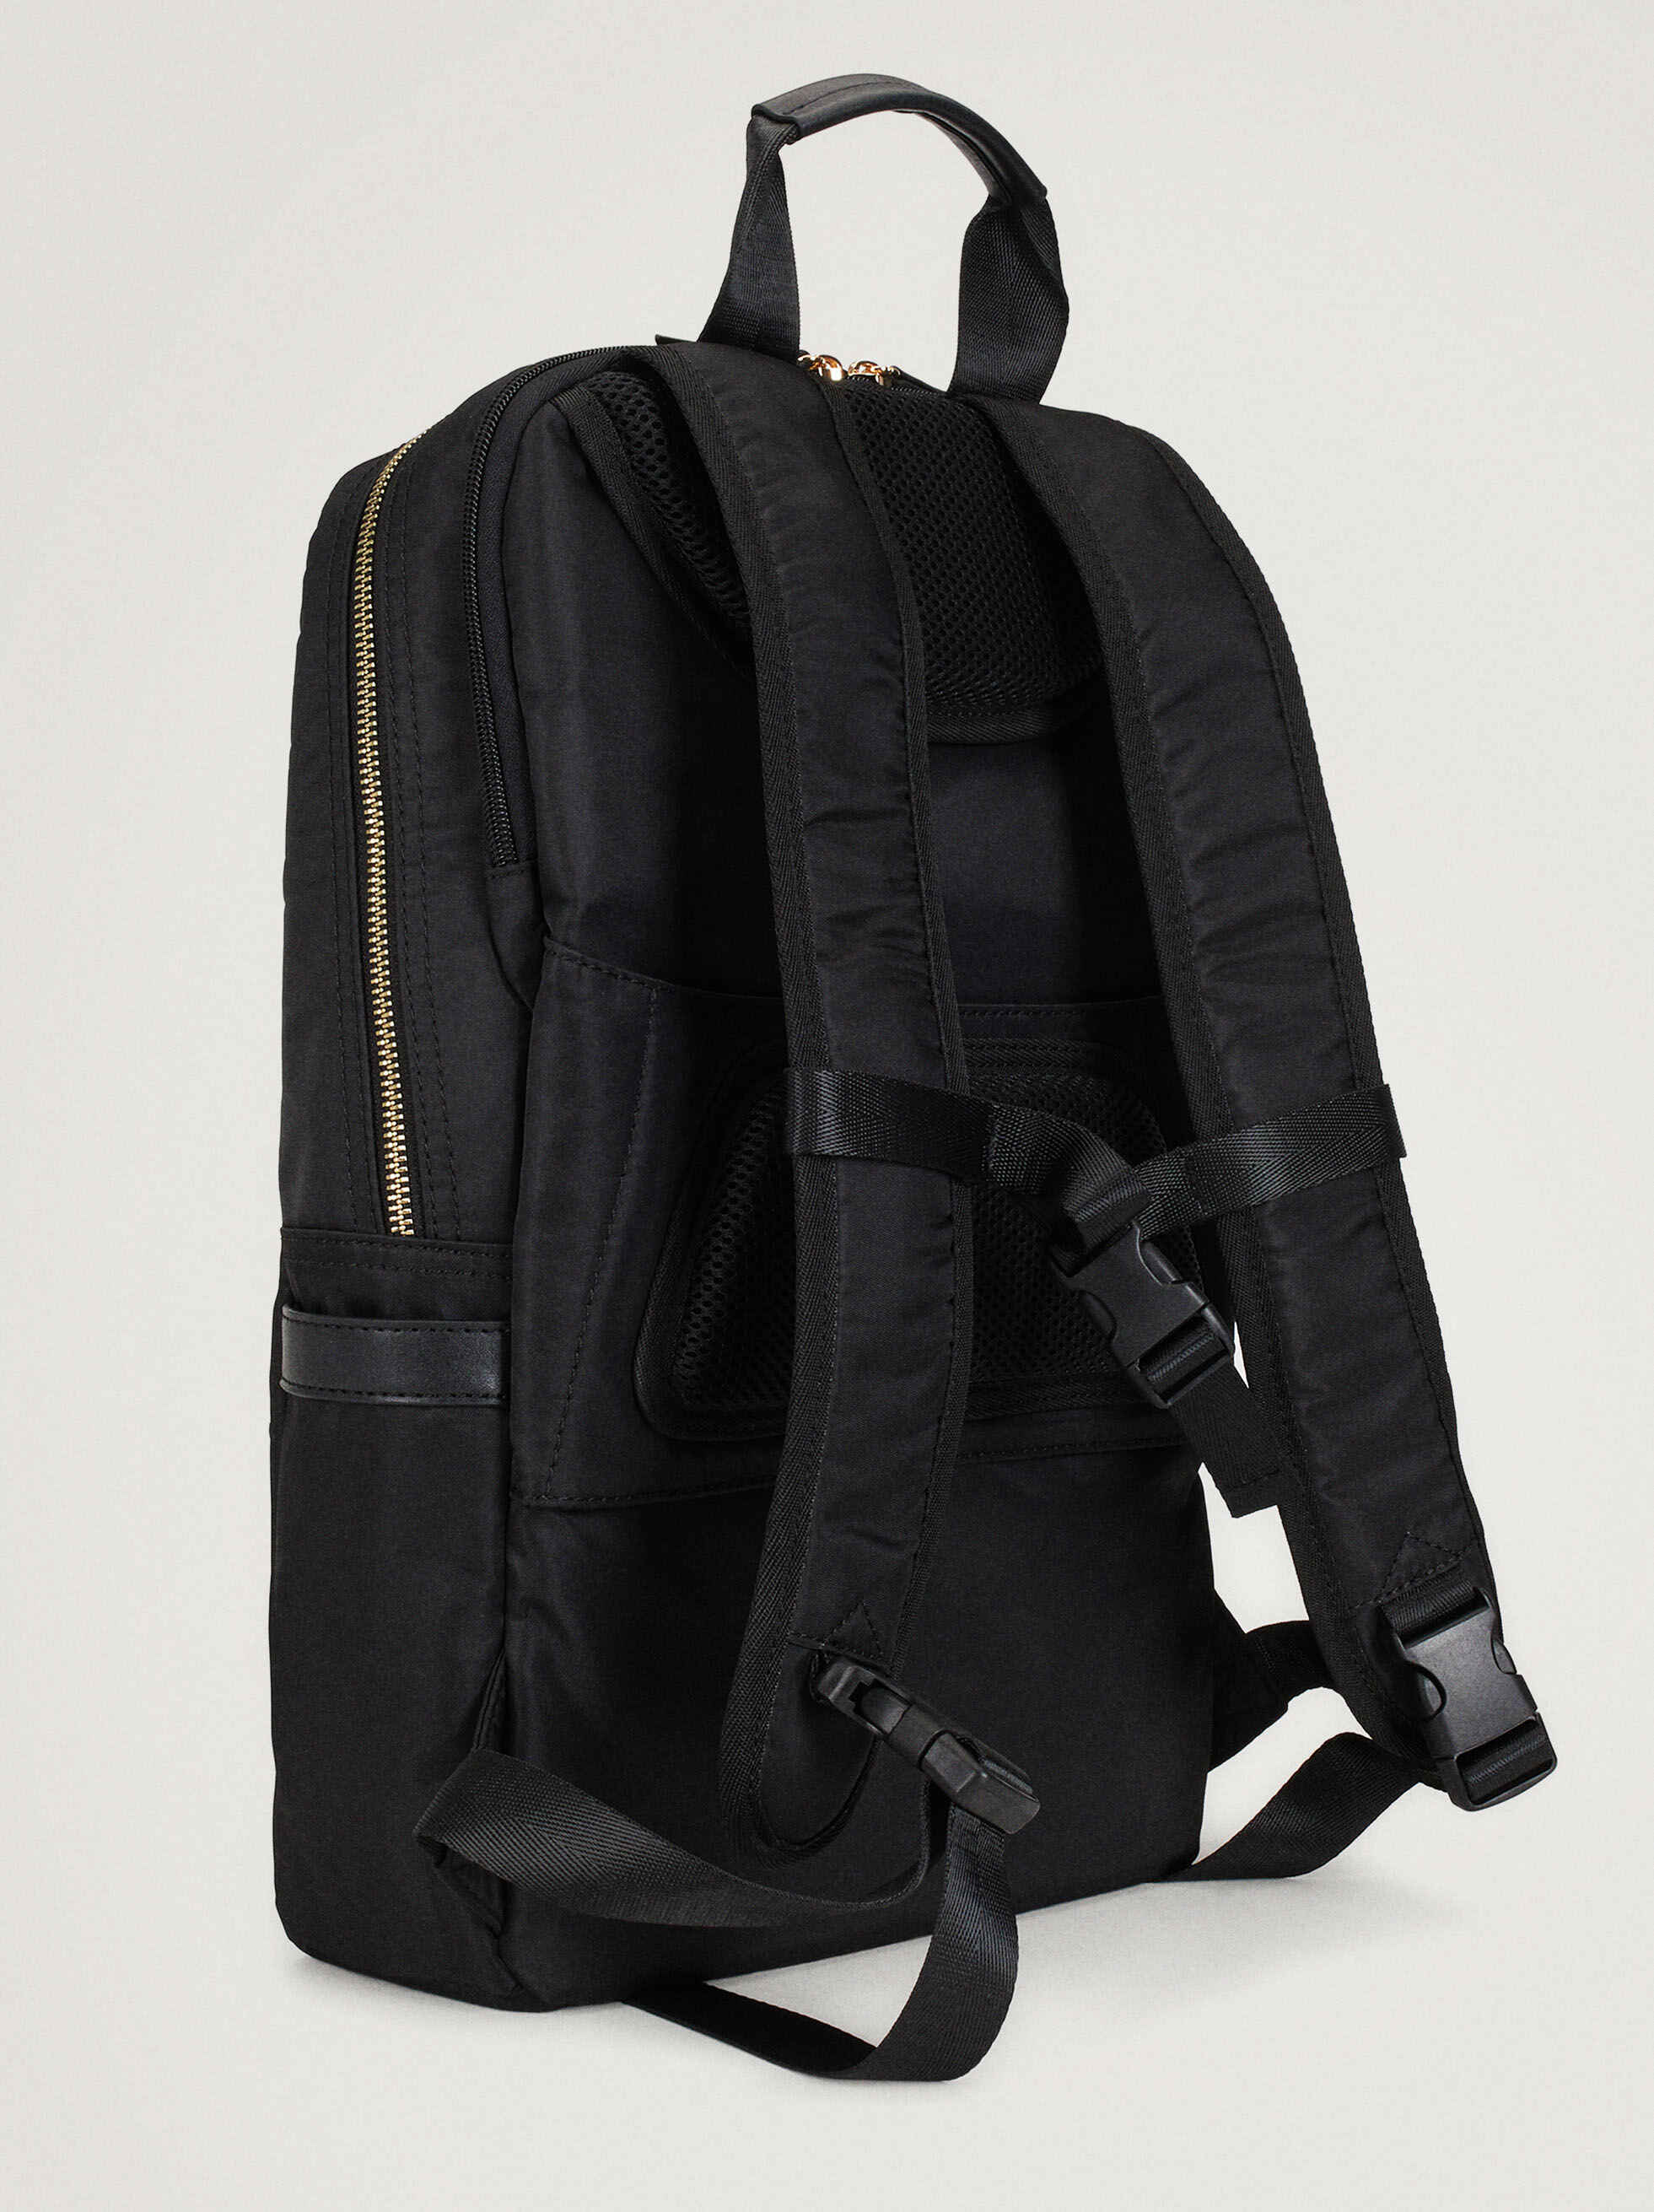 Nylon Backpack For 15